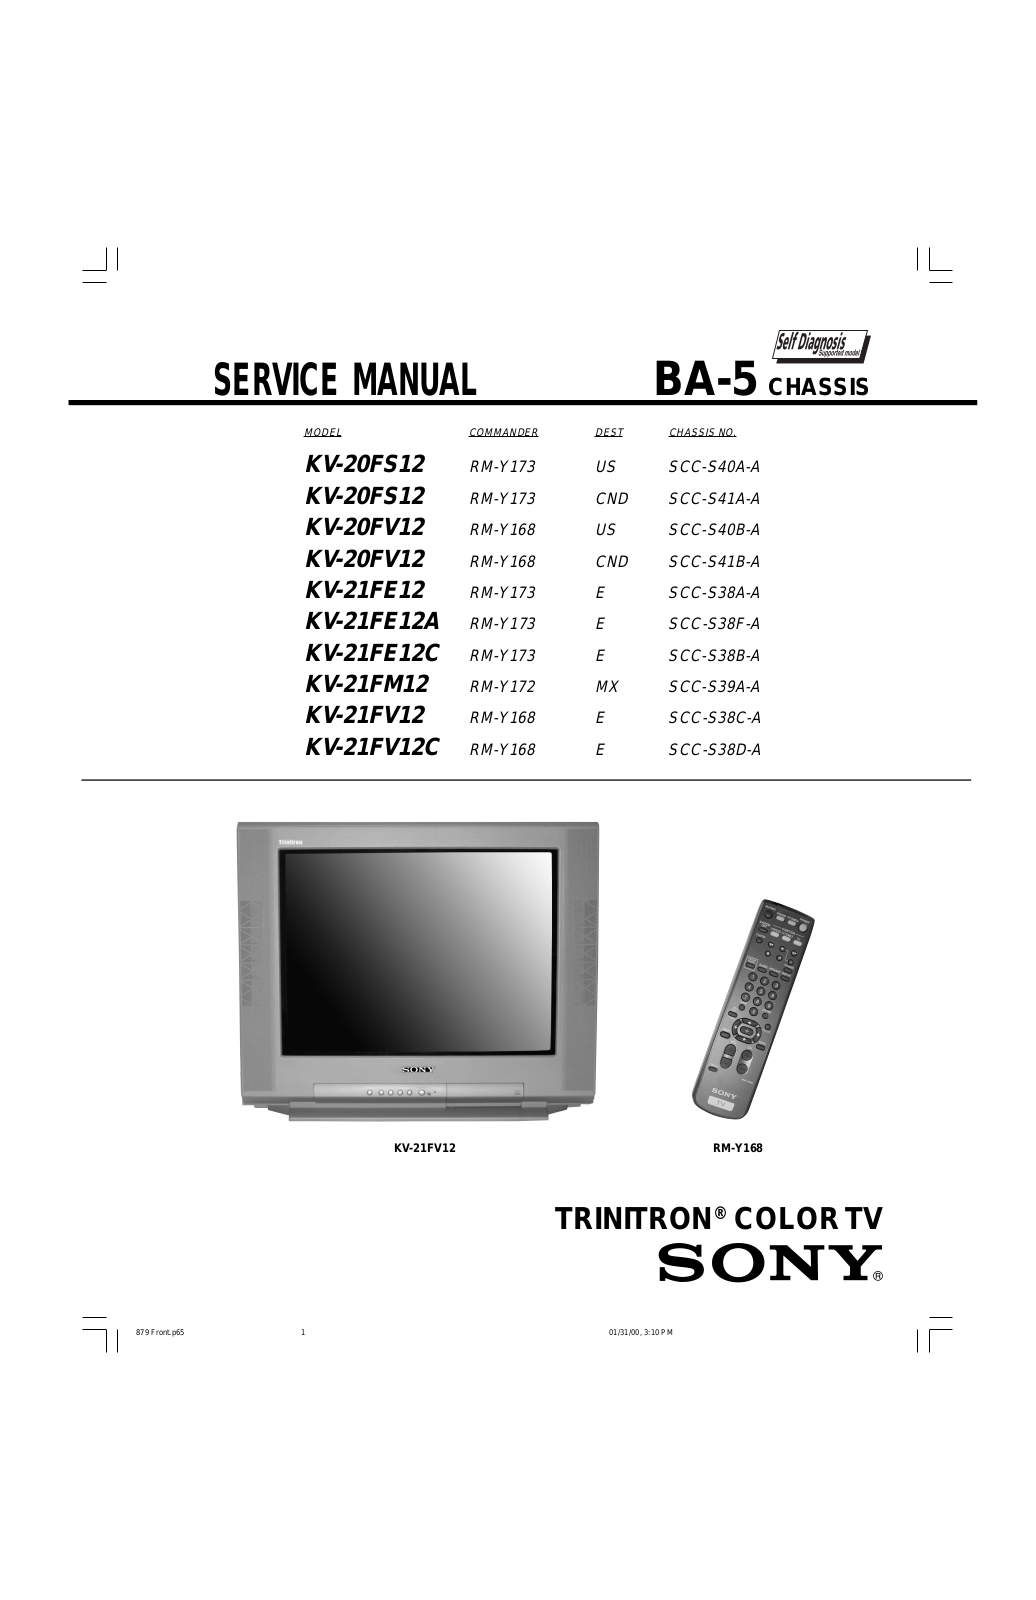 Sony KV-20FS12, KV-20FV12, KV-21FE12, KV-21FE12A, KV-21FE12C Service manual